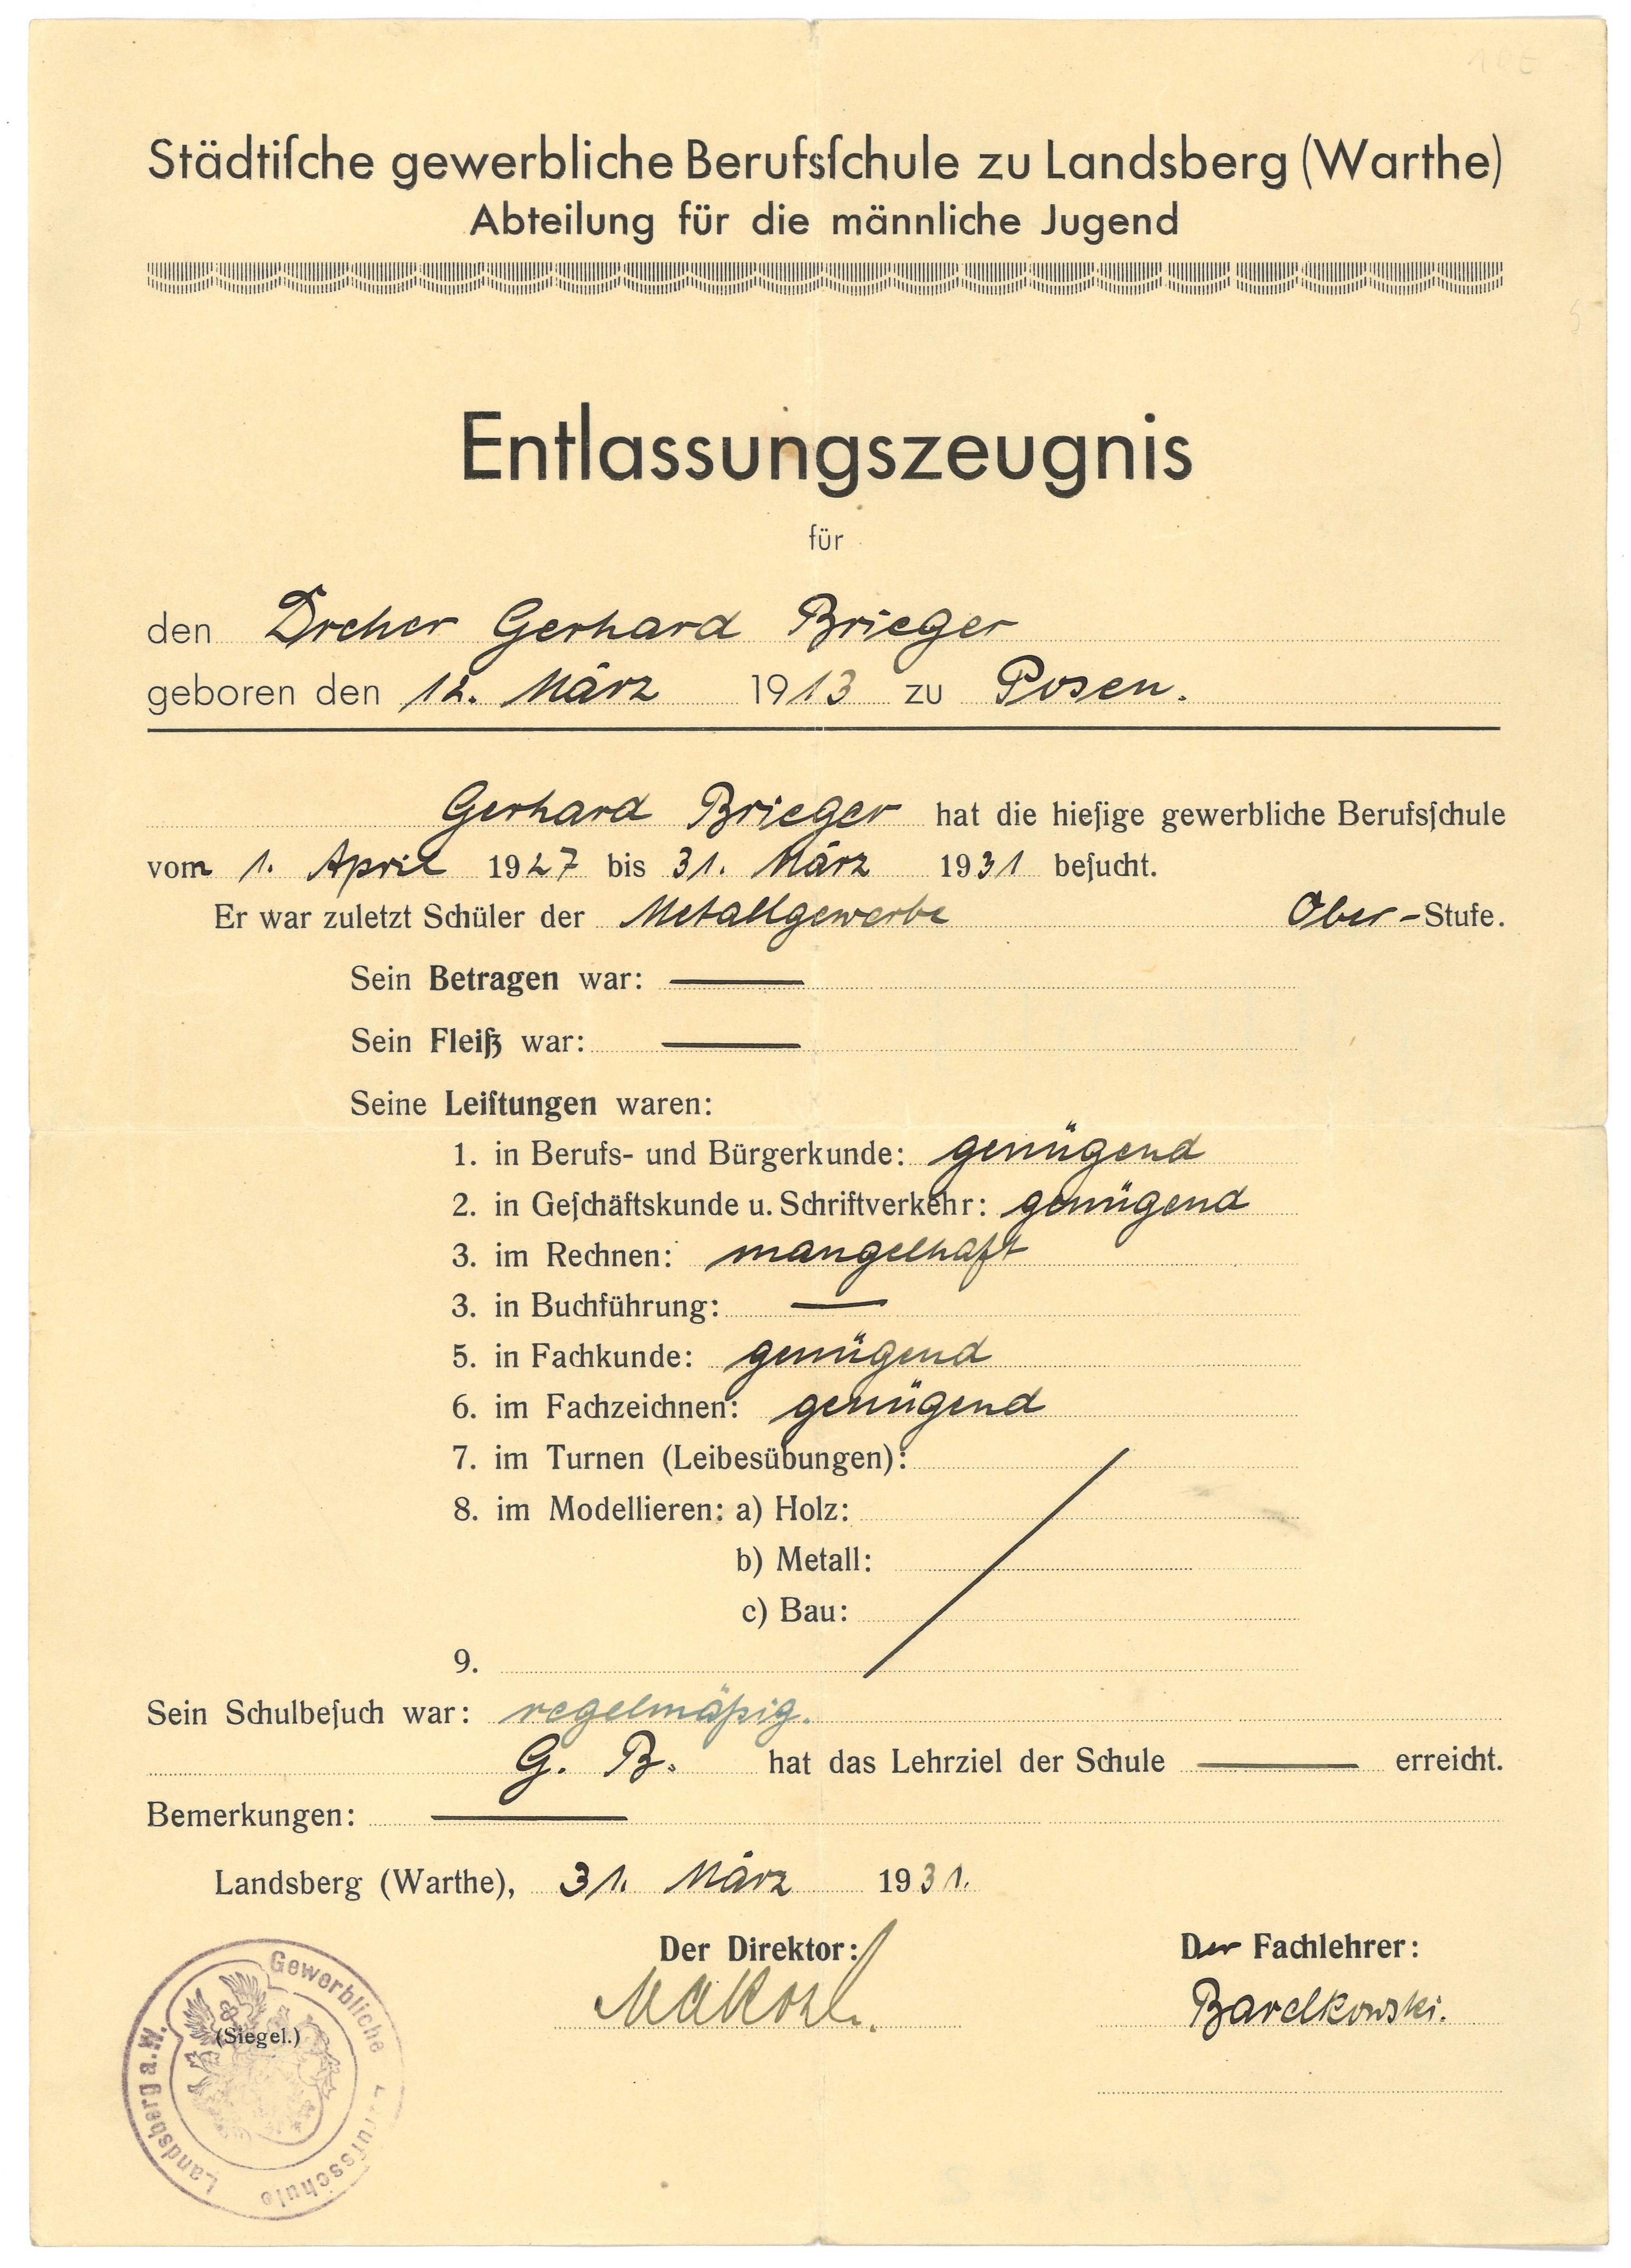 Entlassungszeugnis der Städtischen gewerblichen Berufsschule Landsberg/Warthe [Gorzów Wlkp.] für Gerhard Brieger 1931 (Landesgeschichtliche Vereinigung für die Mark Brandenburg e.V., Archiv CC BY)